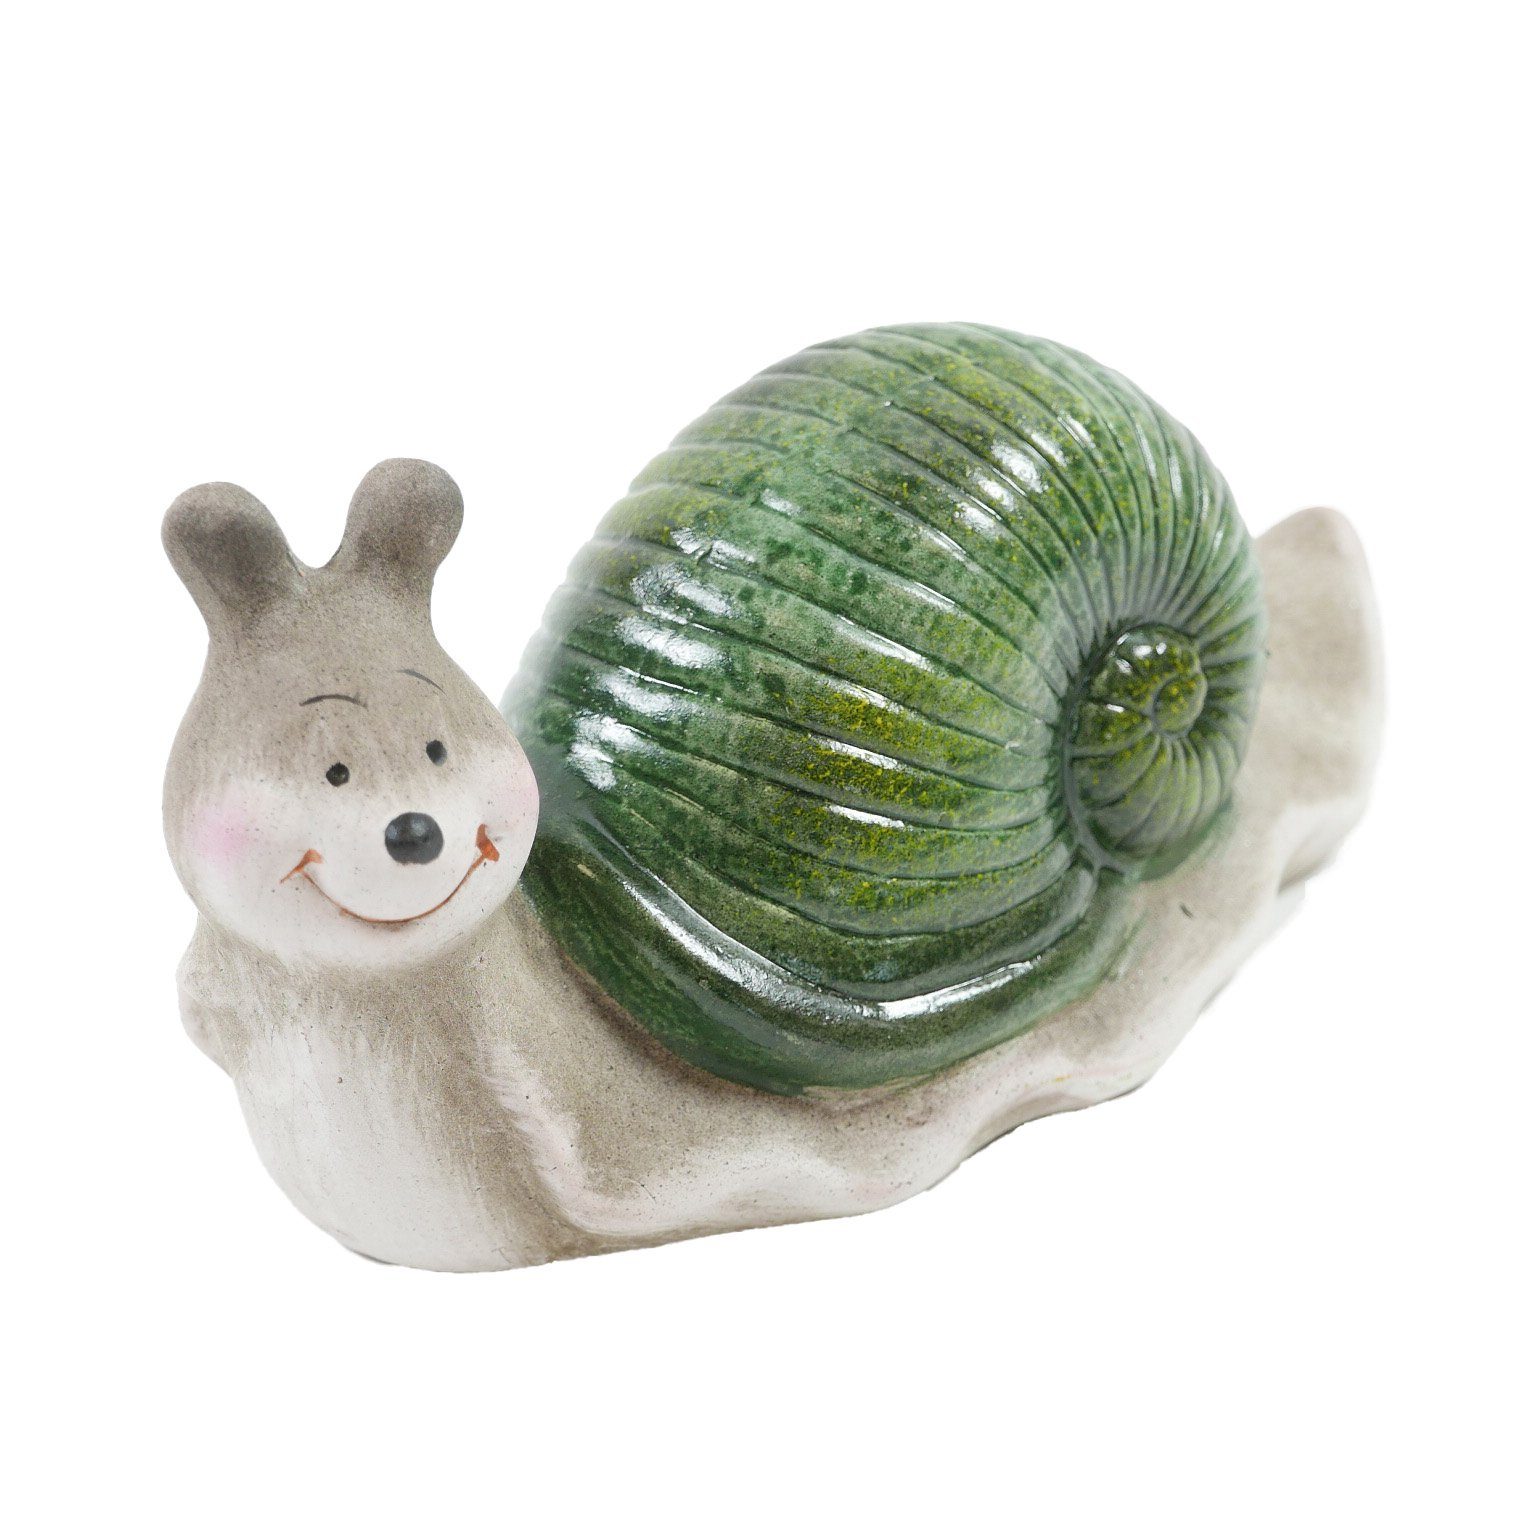 B&S Dekofigur Deko Schnecken Gartenfigur aus Keramik mit Grünen Häuschen 18 cm lang